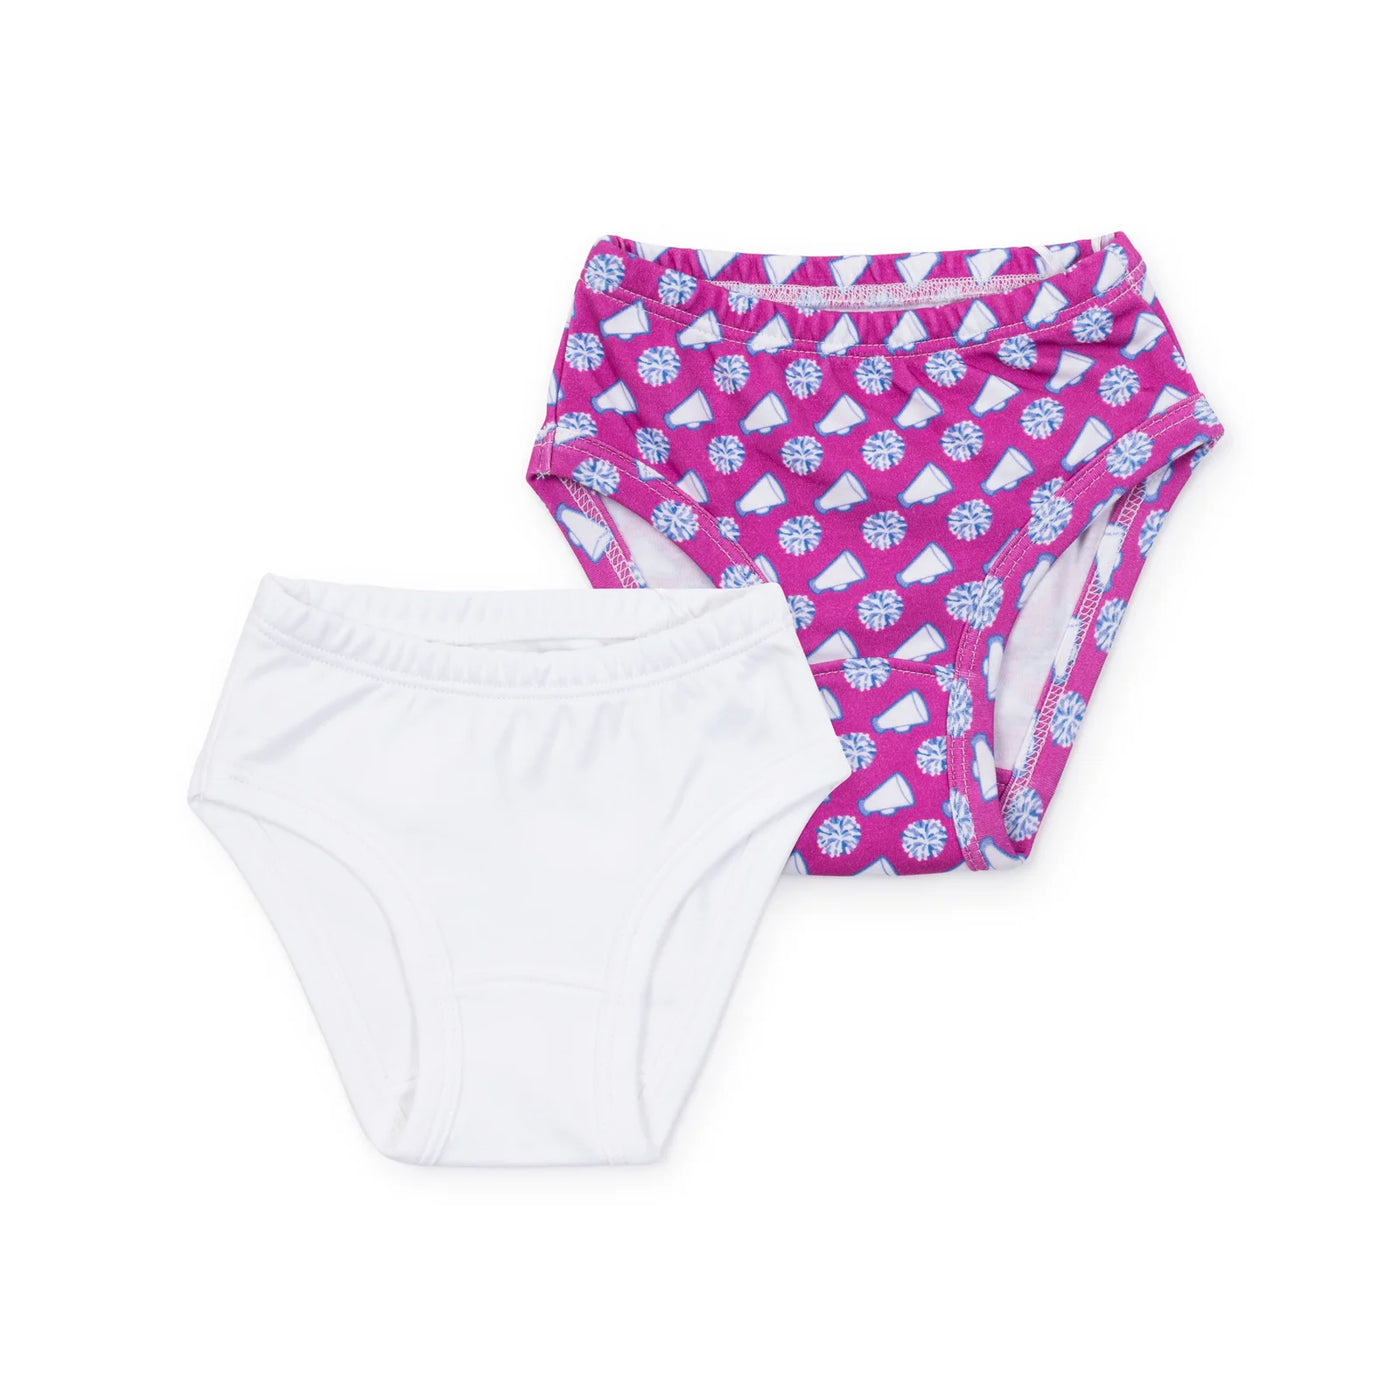 Cheerleading/White Lauren Pima Cotton Underwear Set